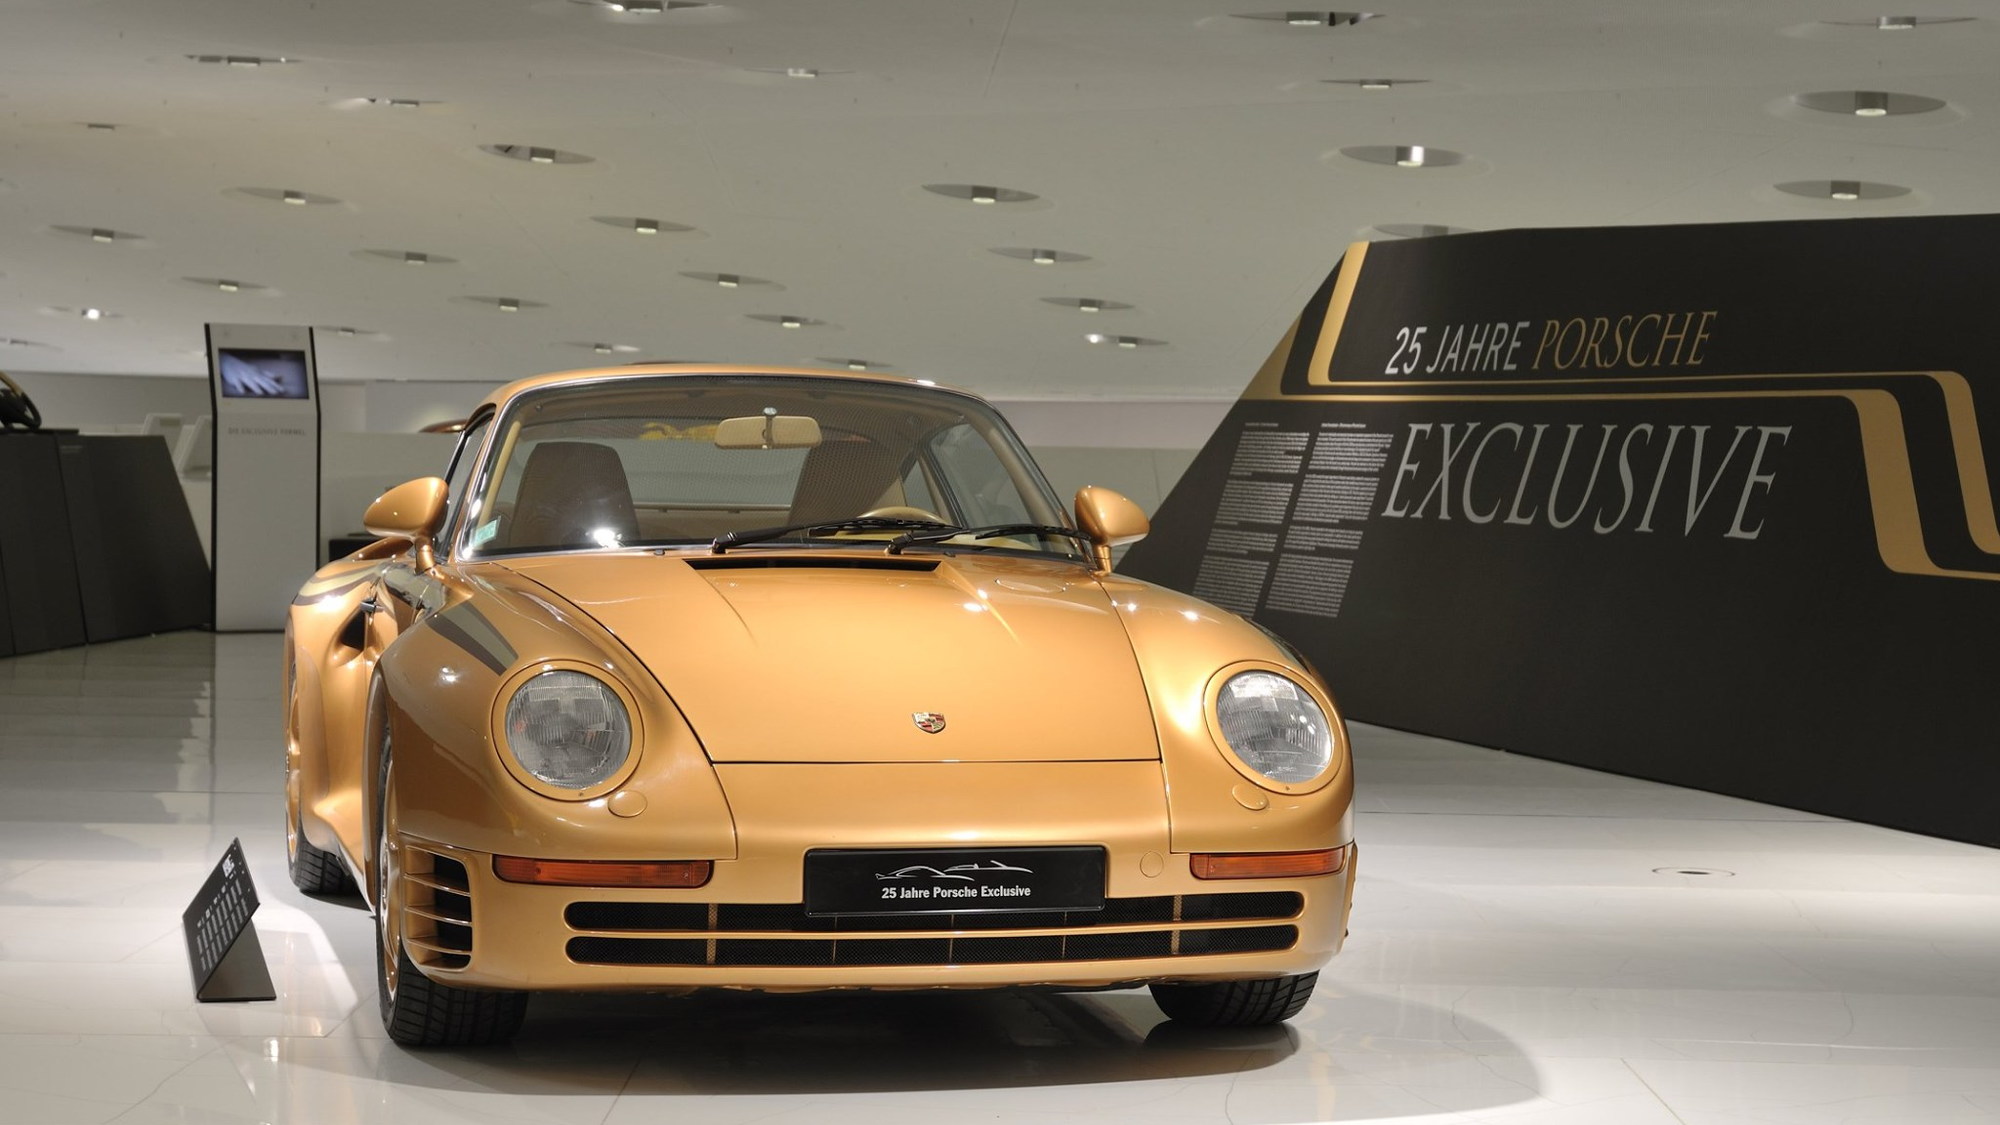 Porsche 959 Exclusives for Arab sheikh